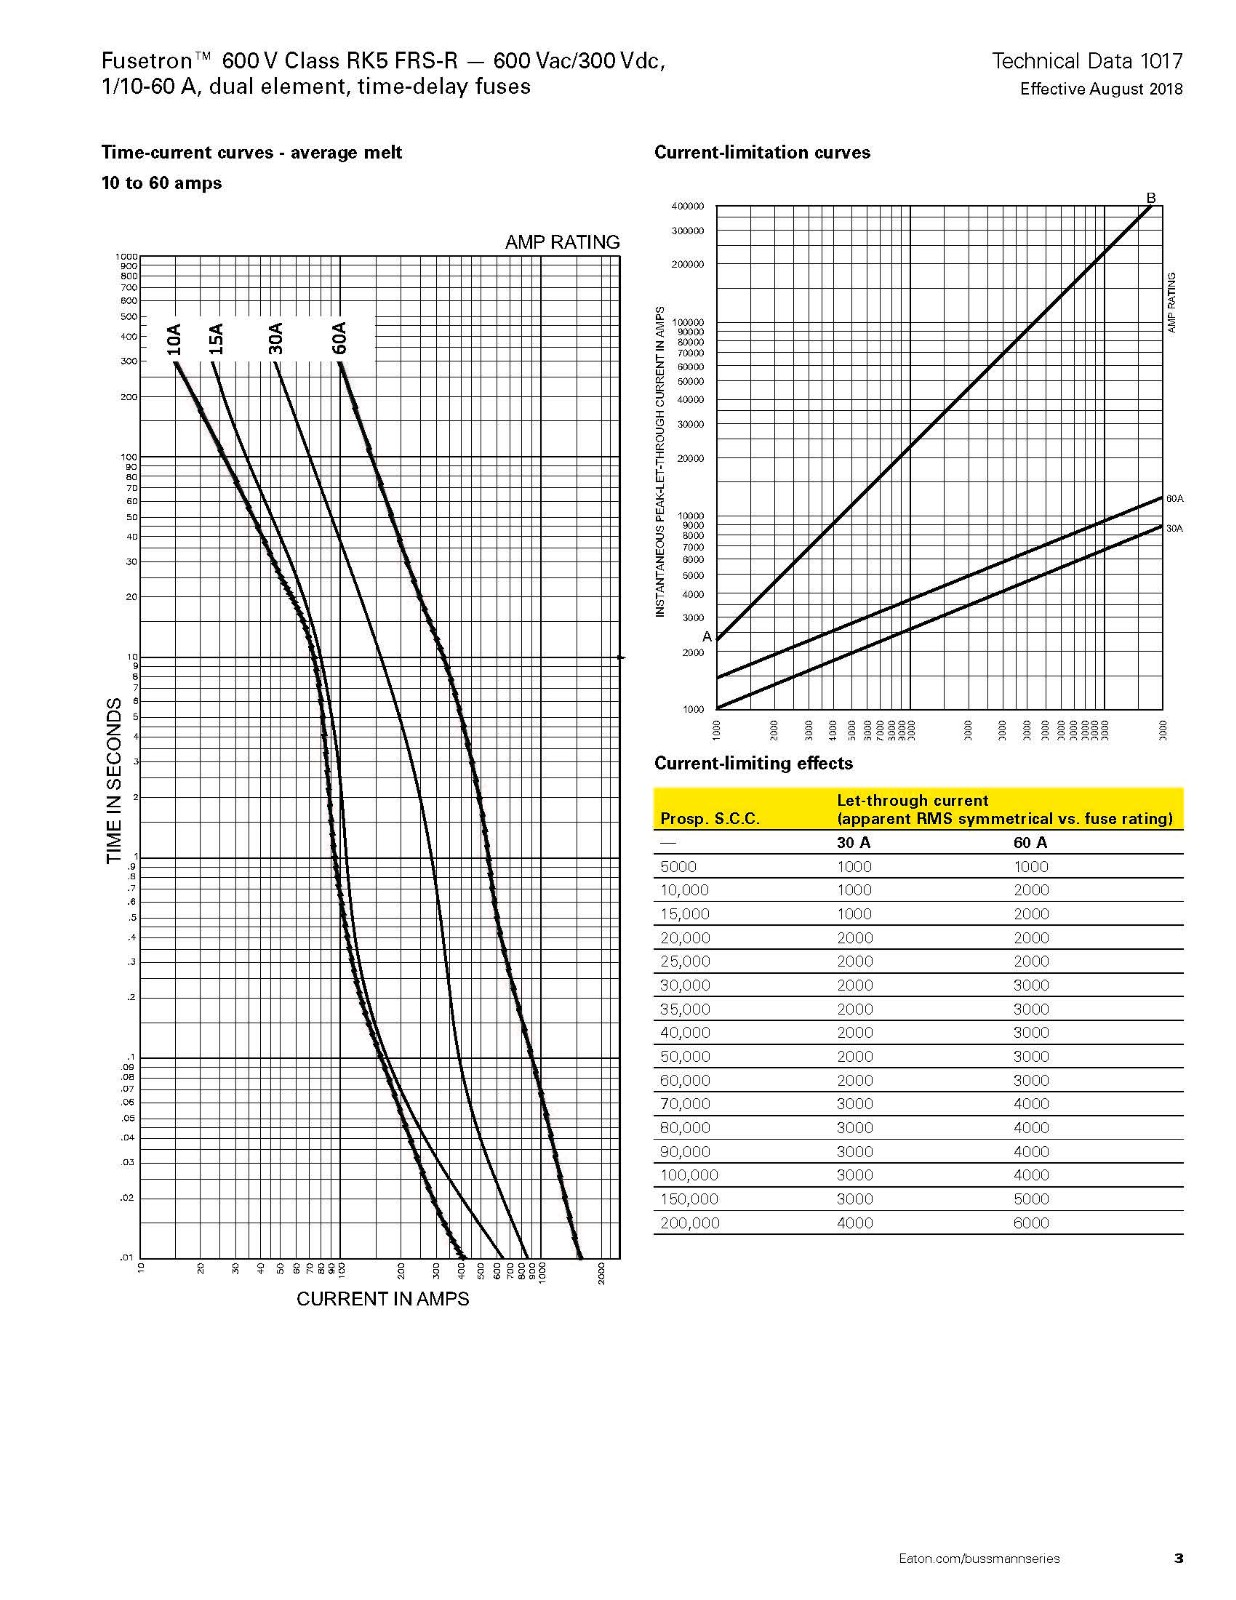 FRS-R系列熔斷器曲線圖